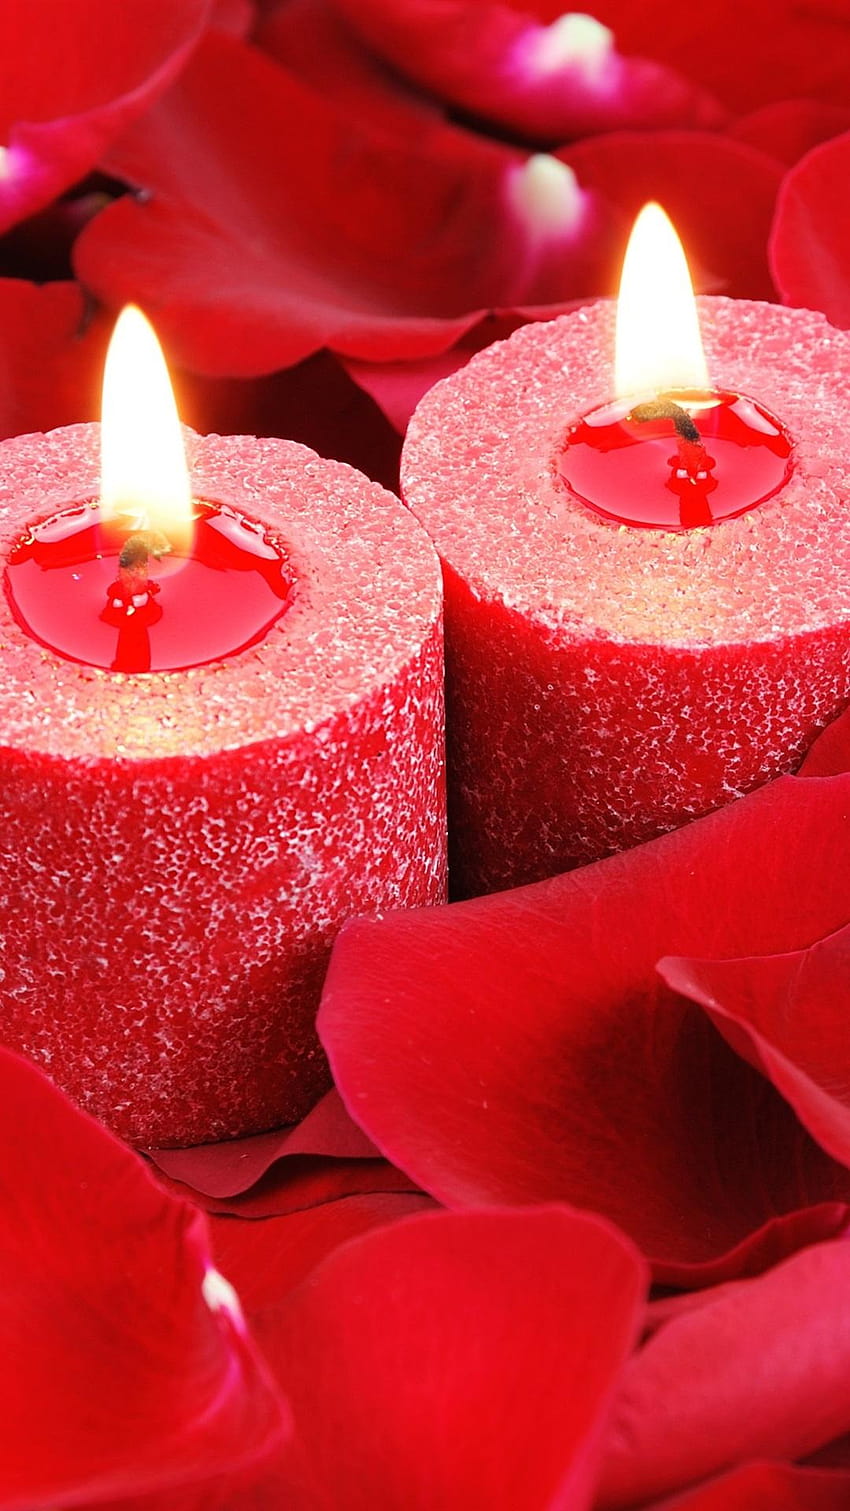 Velas rojas, llama, pétalos de rosa, romántico 1080x1920 iPhone 8, rosa y velas rojas navideñas fondo de pantalla del teléfono